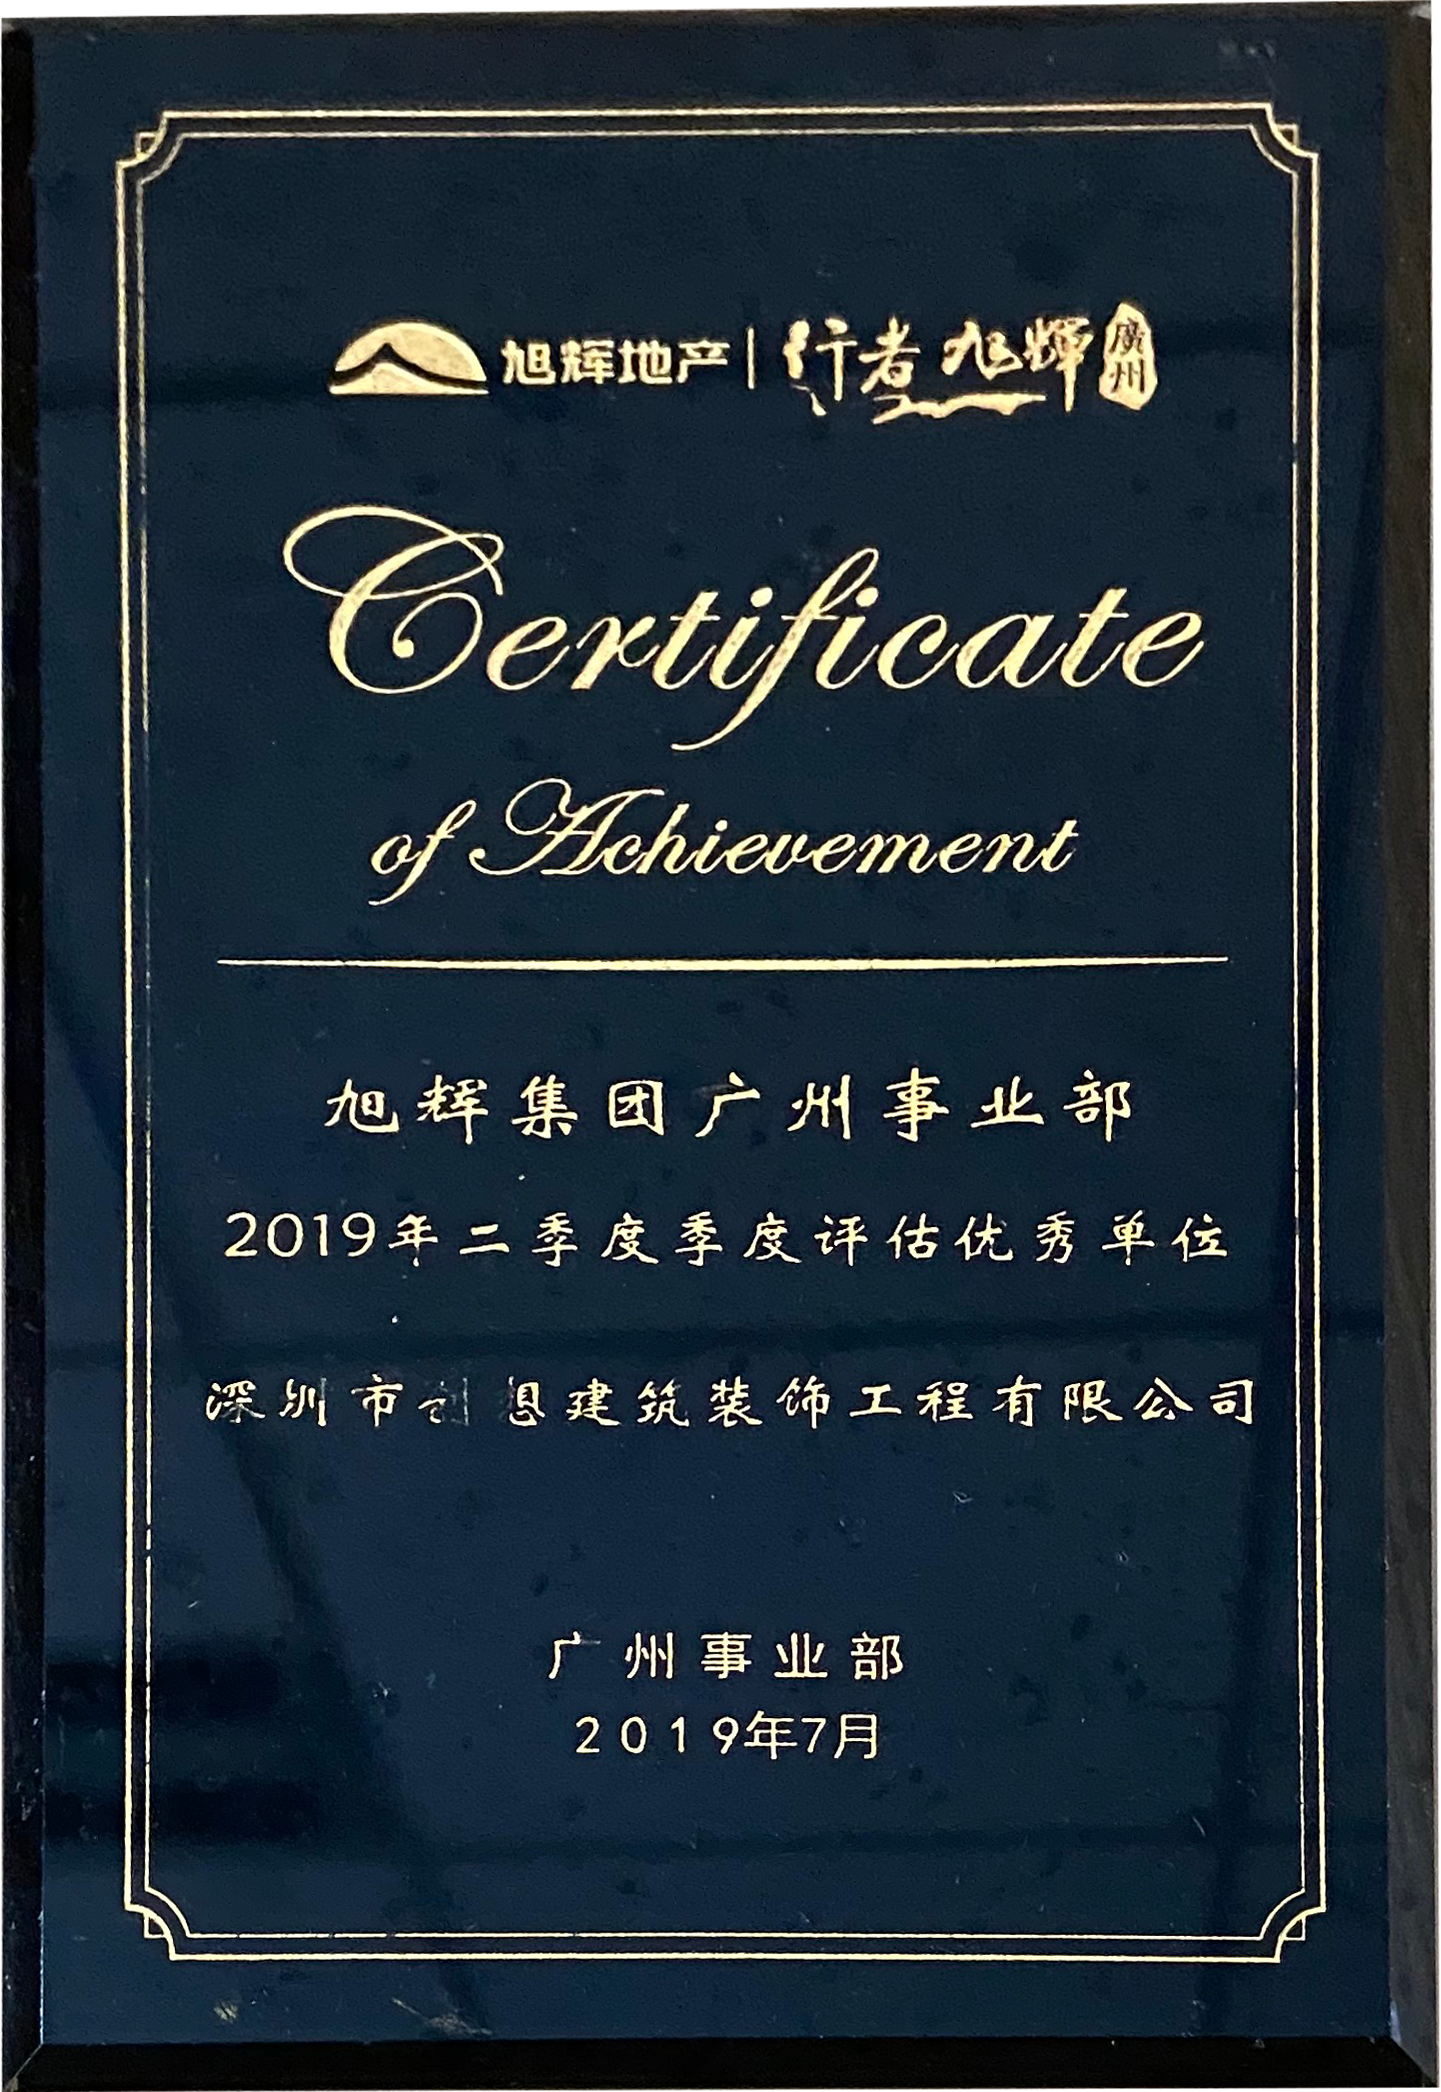 旭辉集团—2019年第二季度评估优秀单位